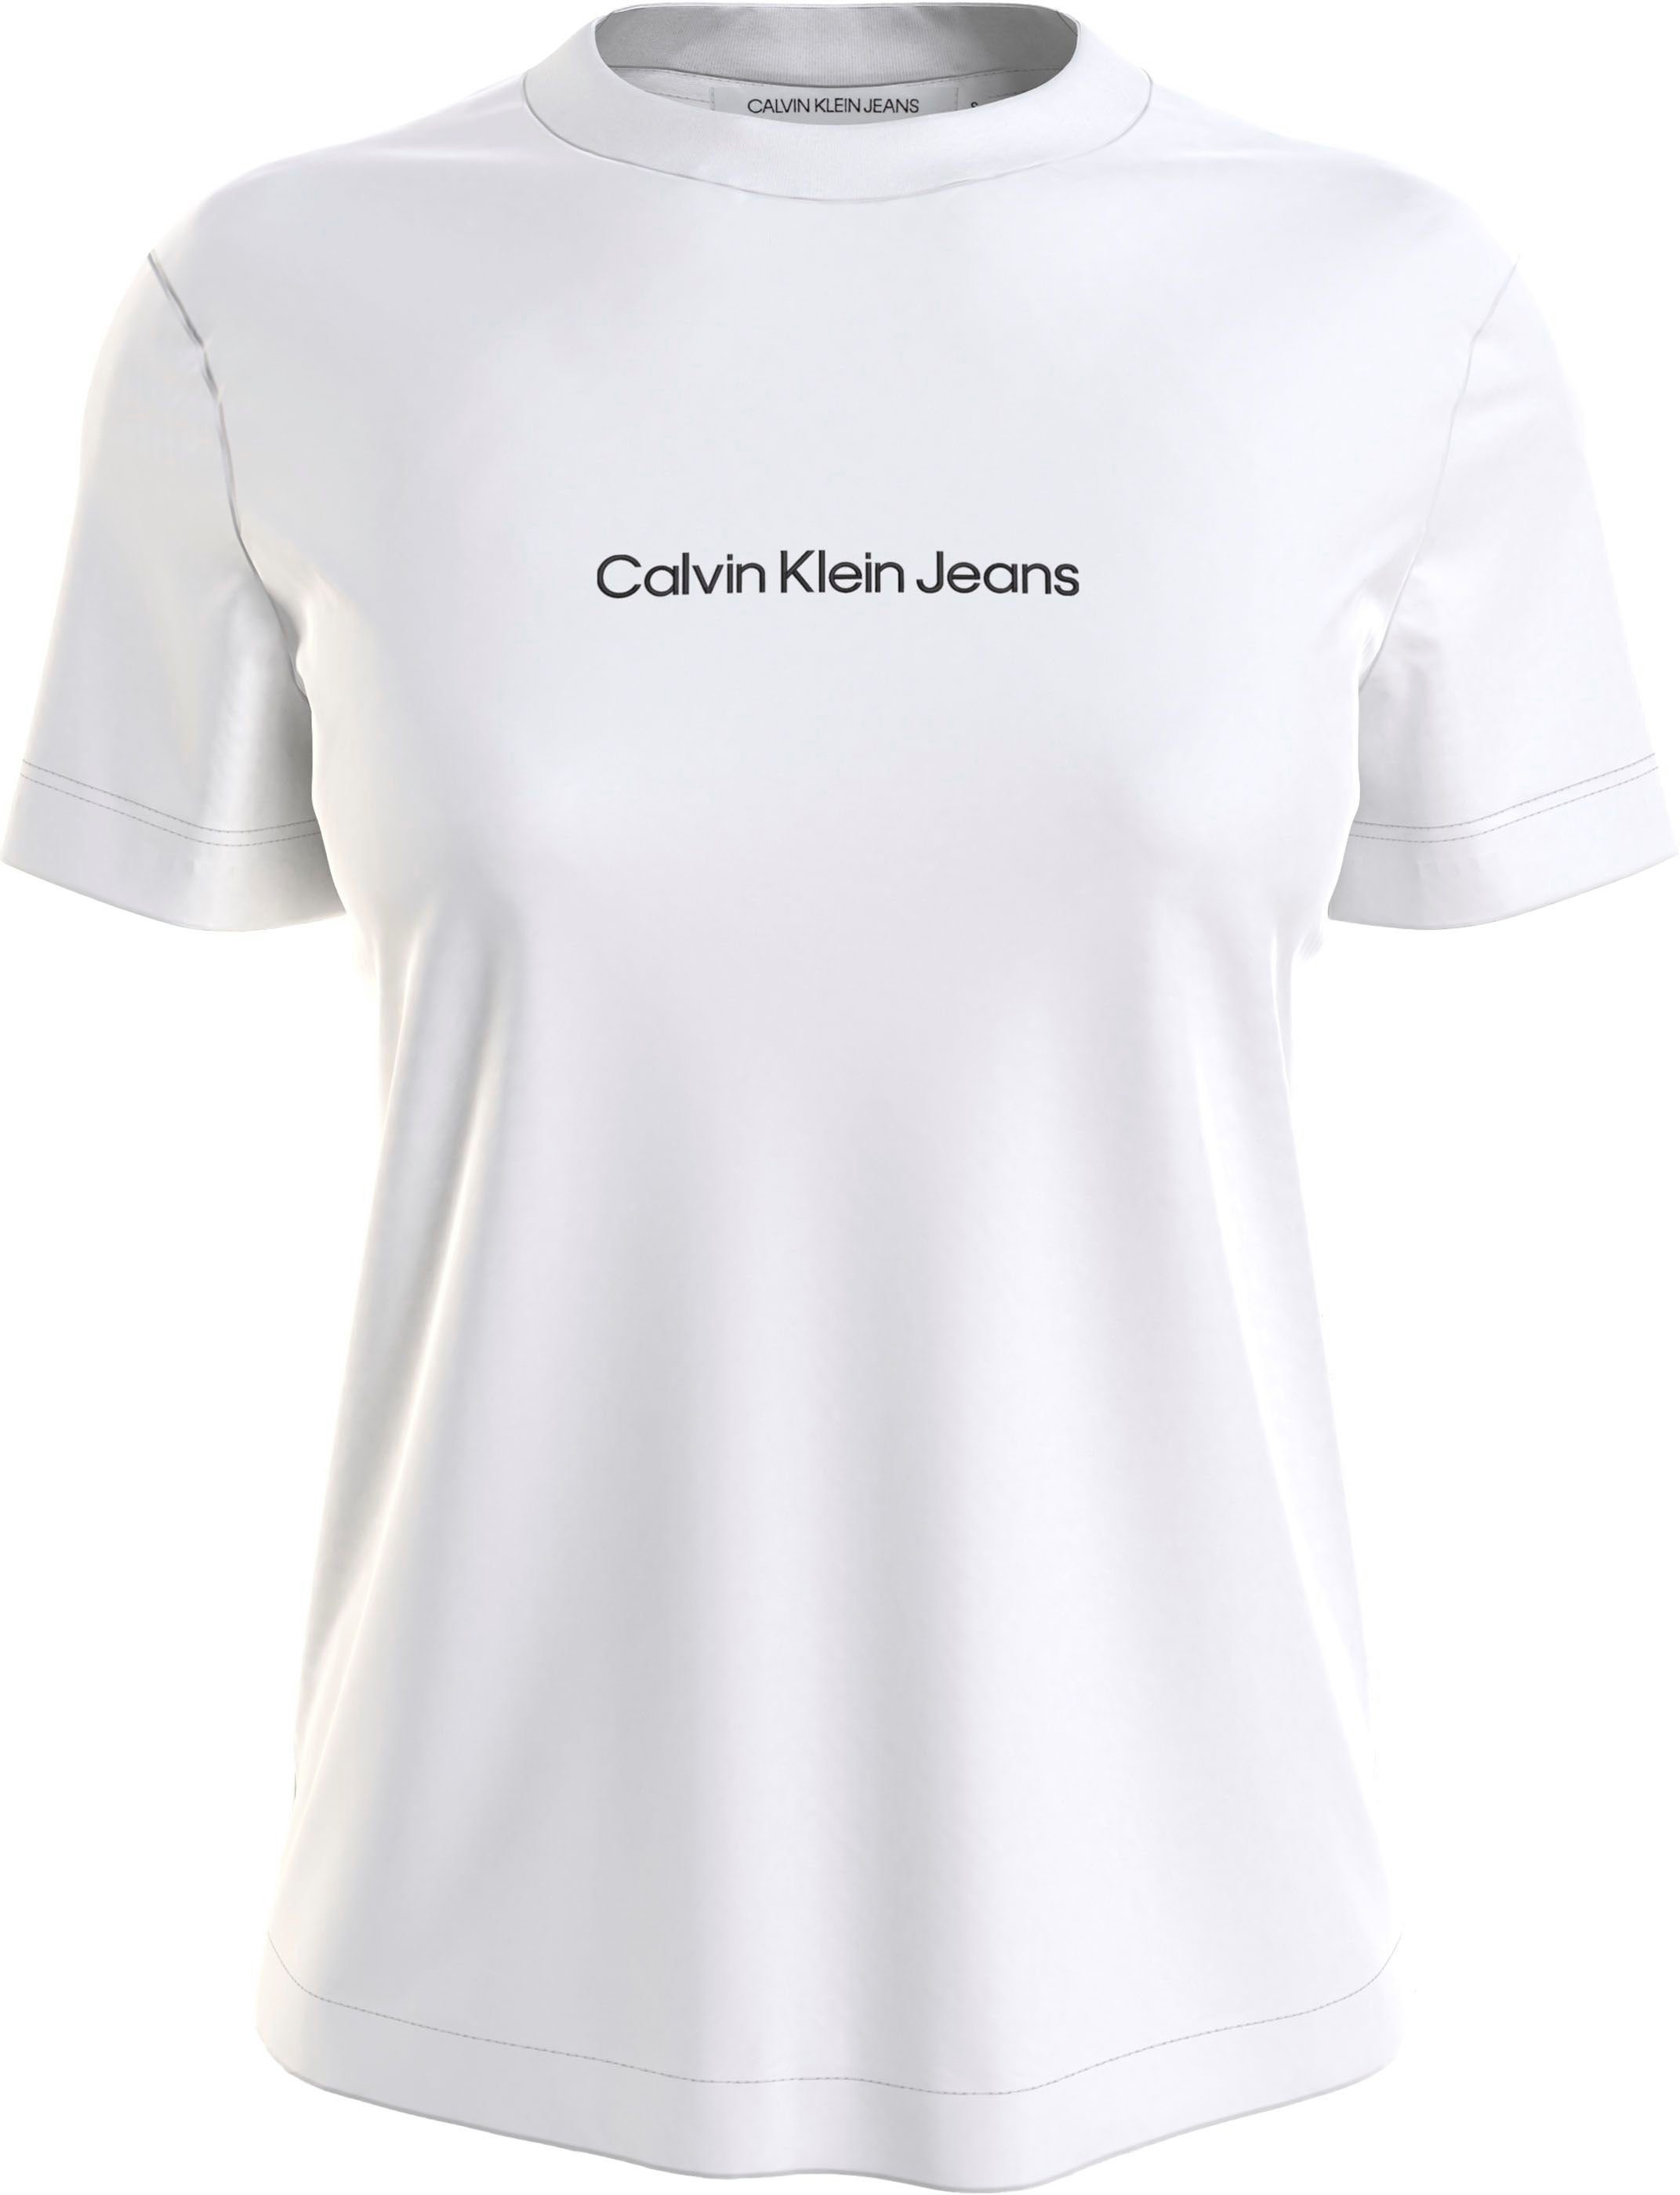 aus T-Shirt Klein reiner Jeans Calvin weiß Baumwolle